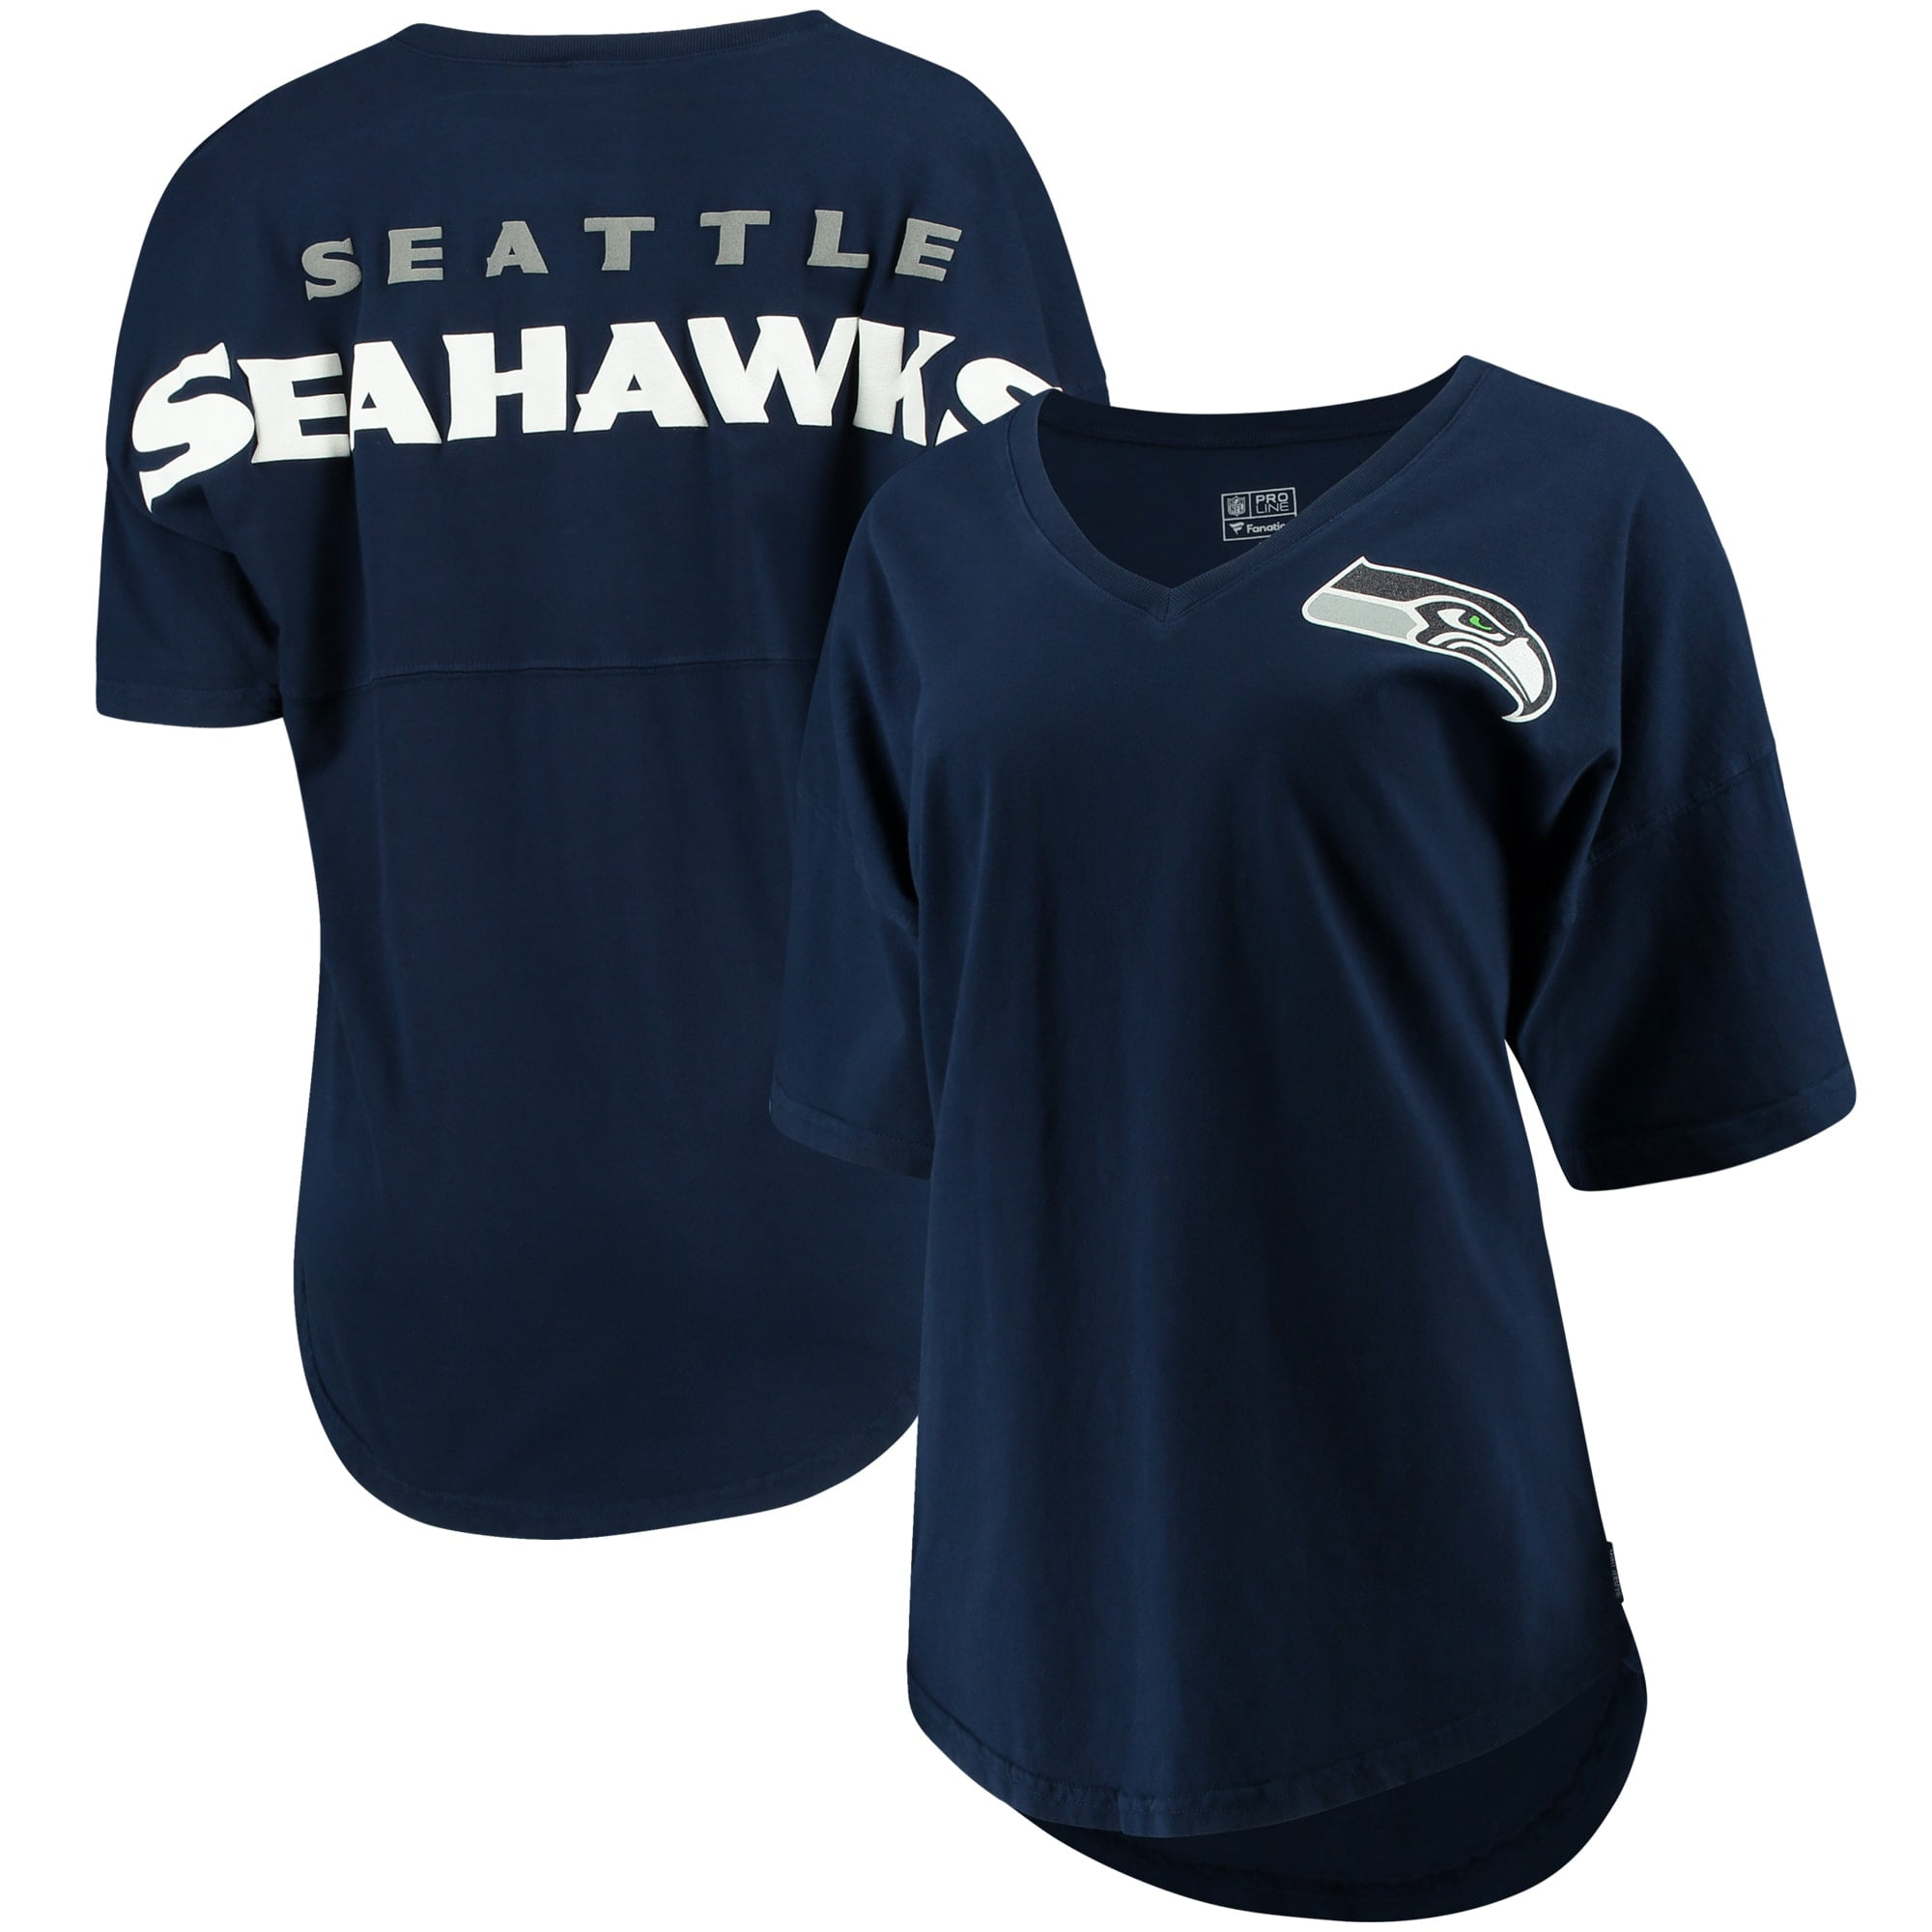 seahawks jersey for women